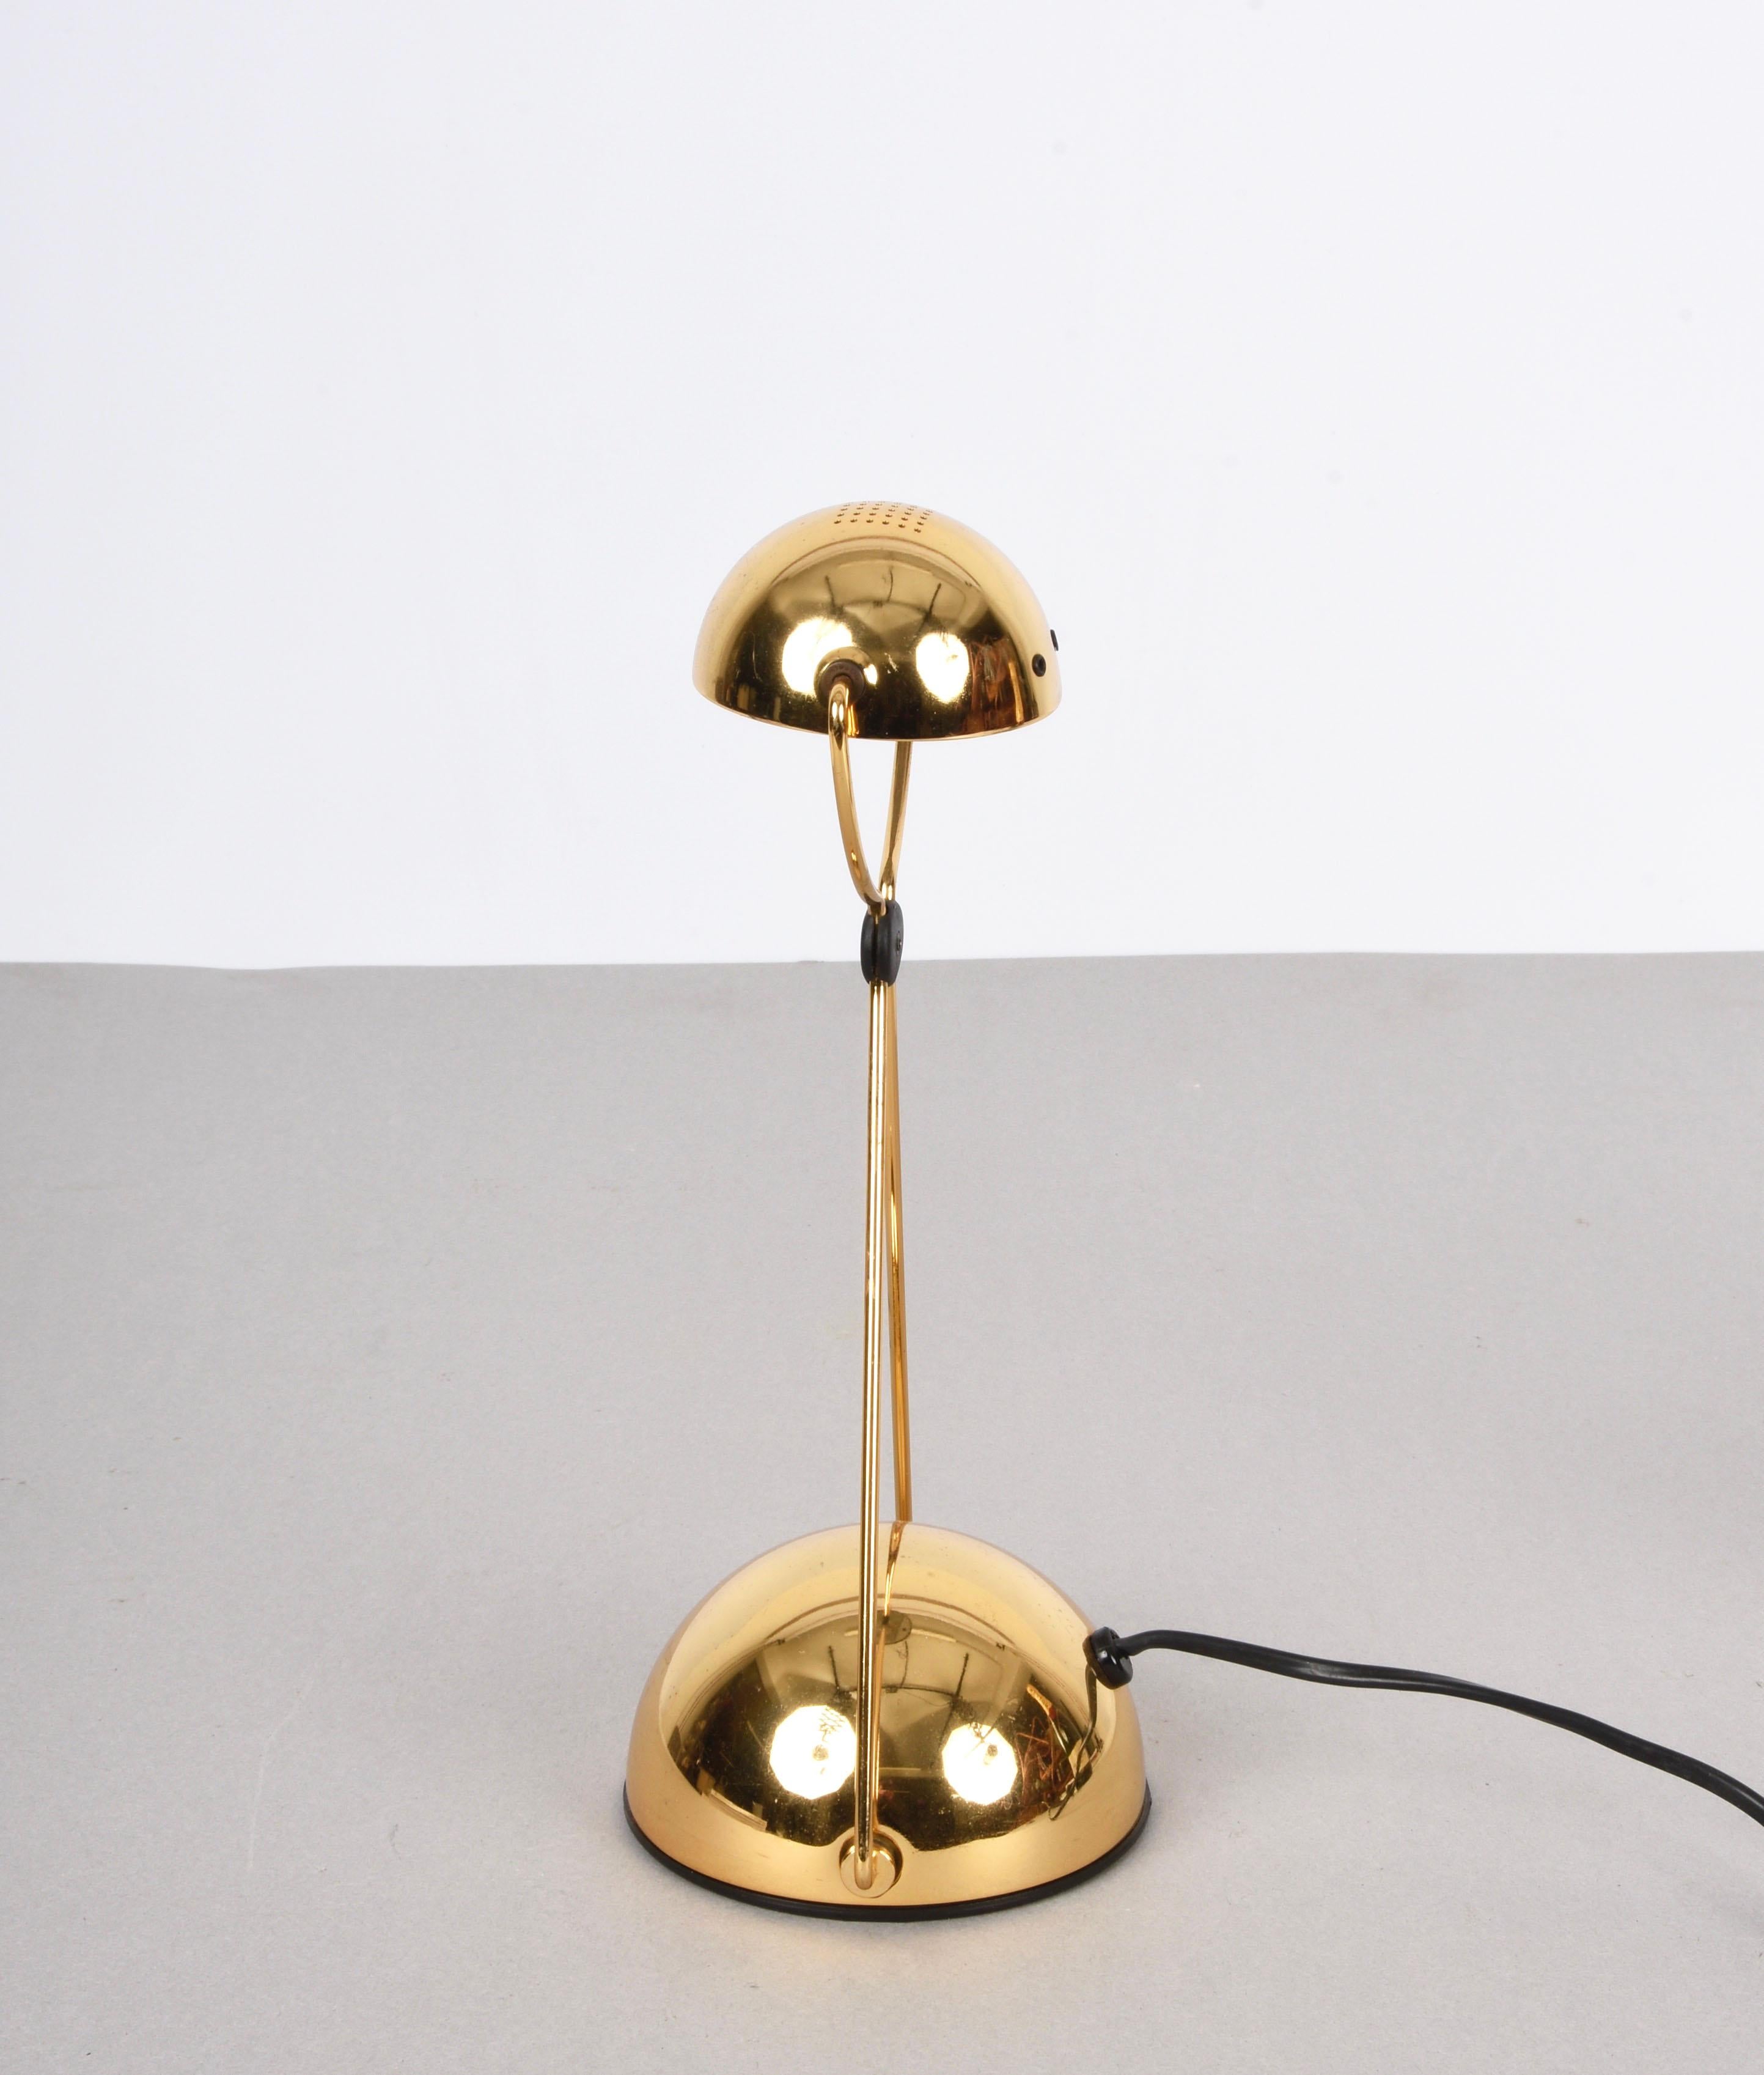 Amazing midcentury 'Meridiana' gold-plated metal halogen table lamp. Cette pièce fantastique a été conçue par Paolo Francesco Piva pour Stefano Cevoli en Italie dans les années 1980.

Cette lampe de table halogène minimaliste, moderne, haute et